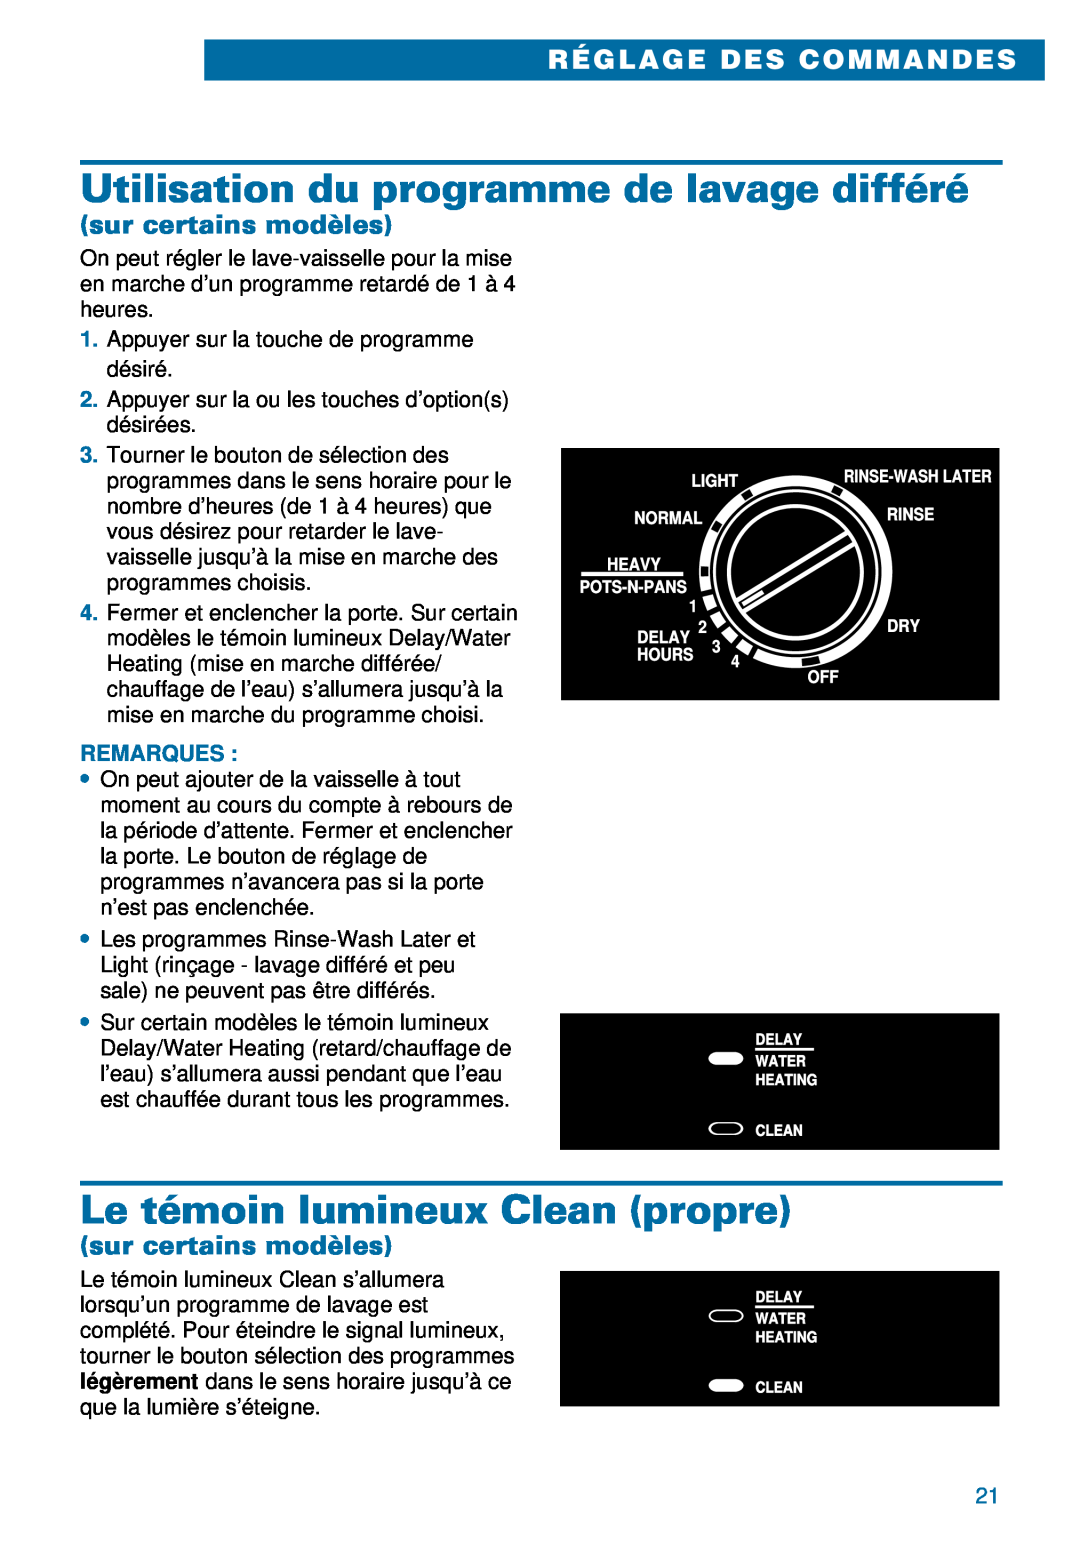 Whirlpool 900 warranty Utilisation du programme de lavage différé, Le témoin lumineux Clean propre, sur certains modèles 